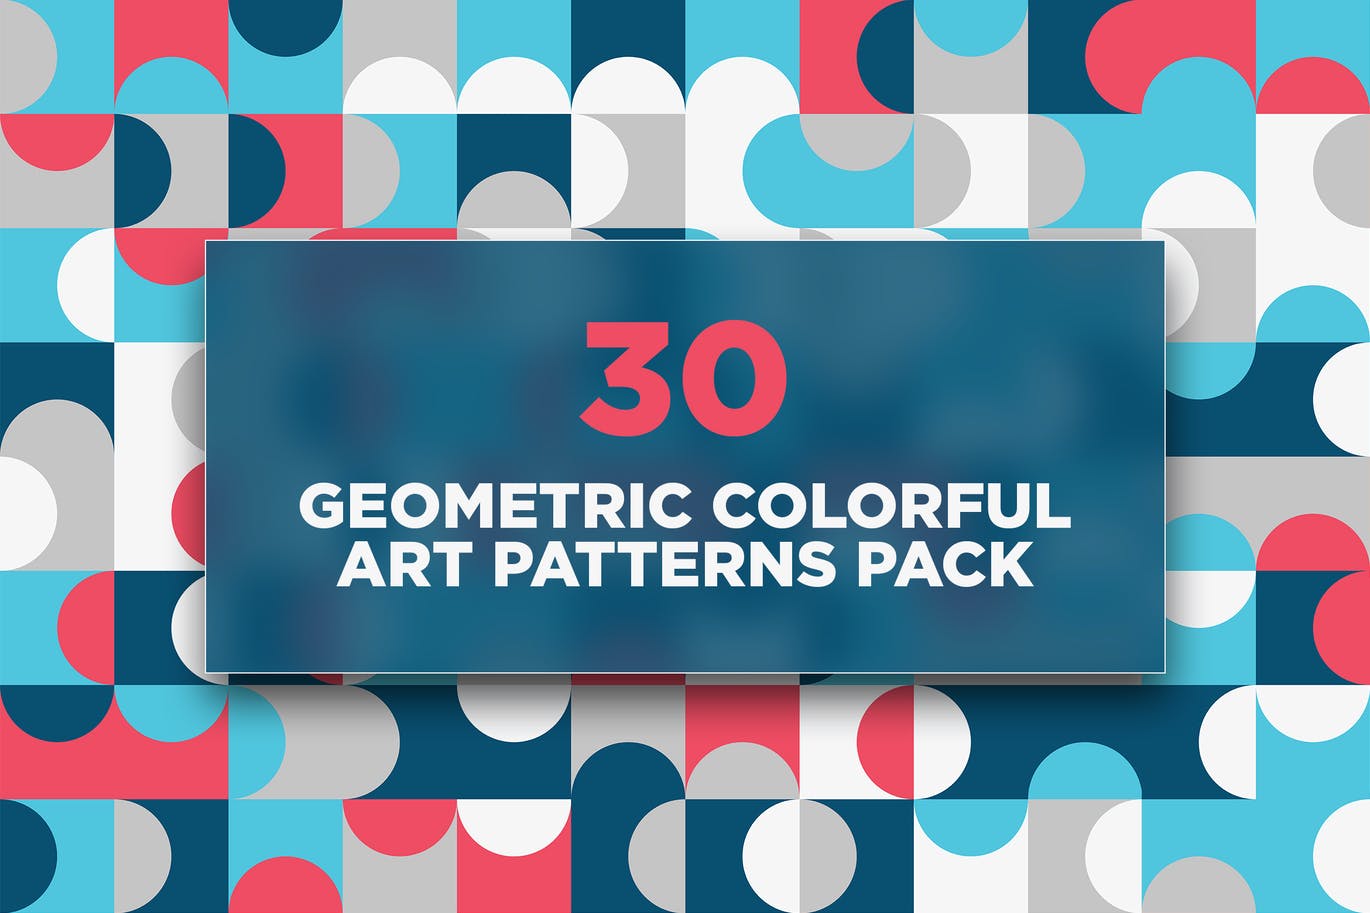 30个几何彩色艺术图案包 30 Geometric Colorful Art Patterns Pack 图片素材 第1张